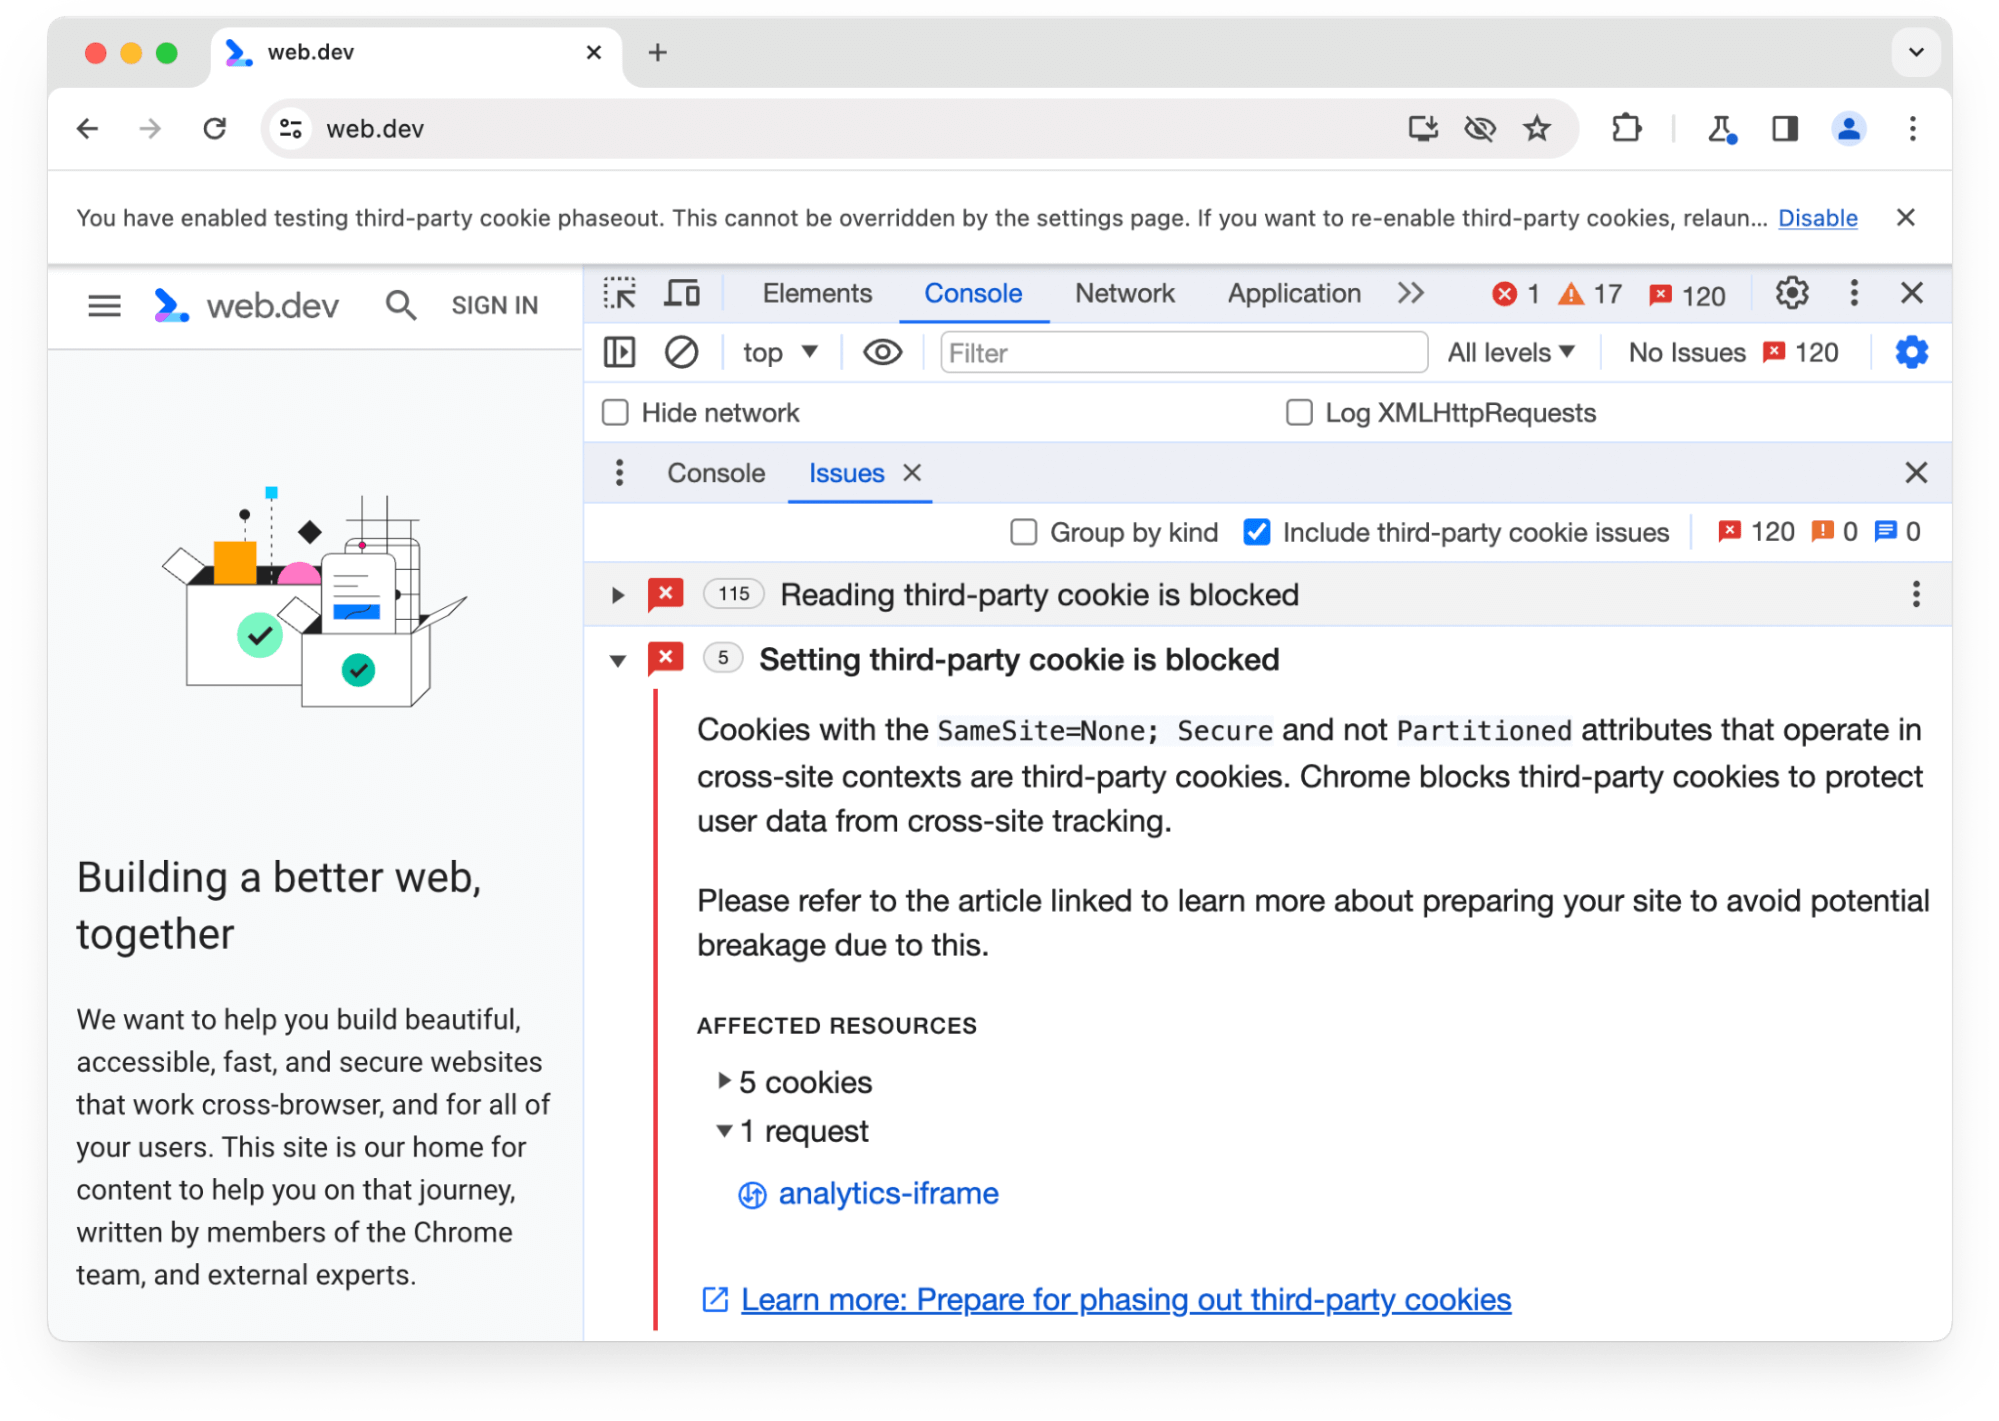 پانل مشکلات Chrome DevTools درباره 5 کوکی شخص ثالث که برای 1 درخواست مسدود شده اند هشدار می دهد.